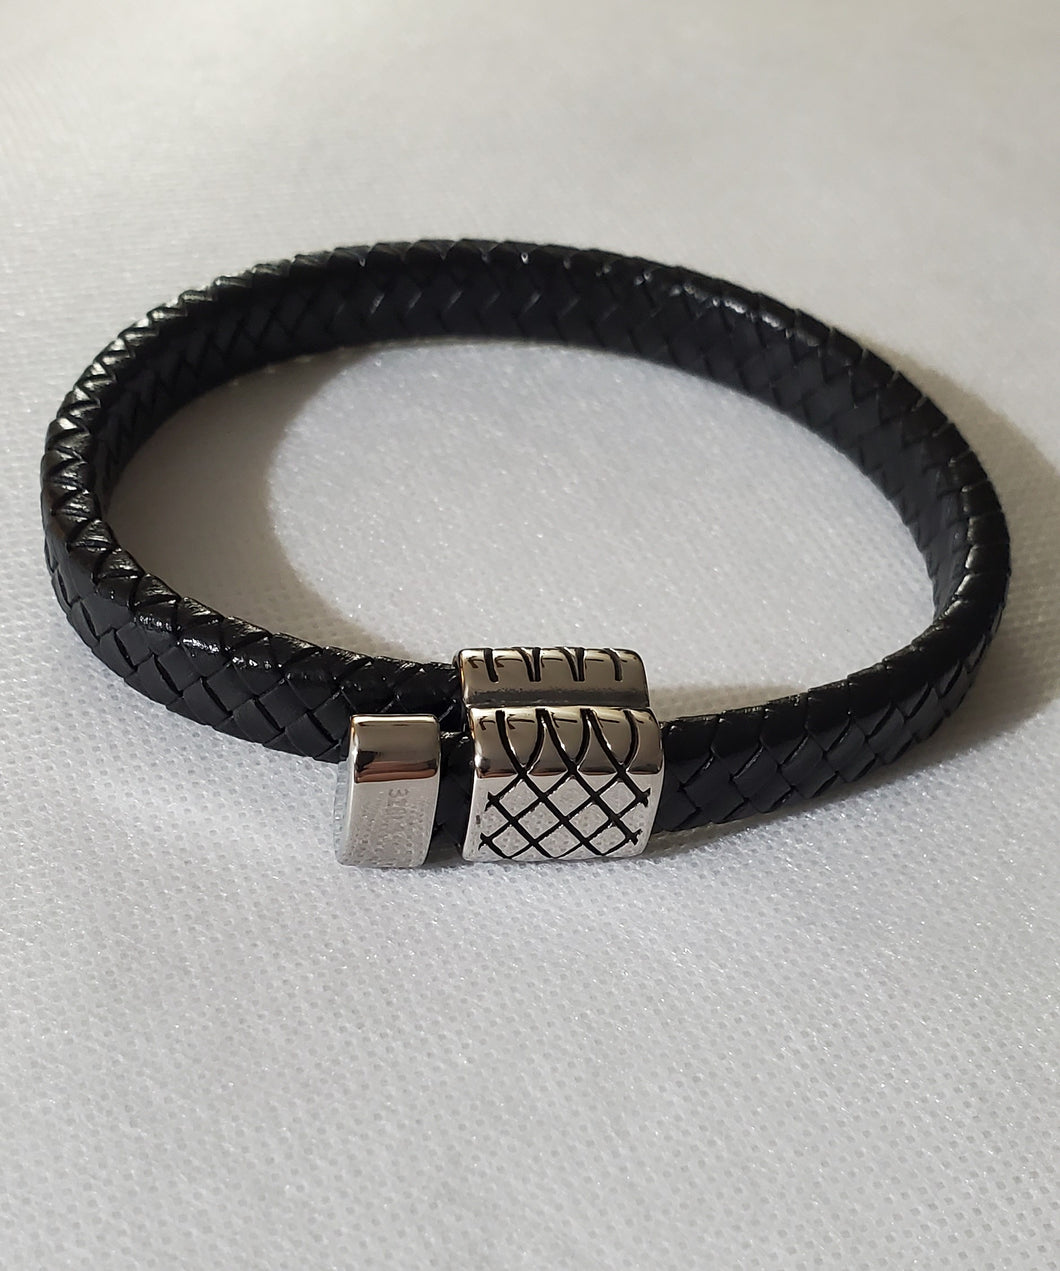 Men's Black Leather Braided Bracelet